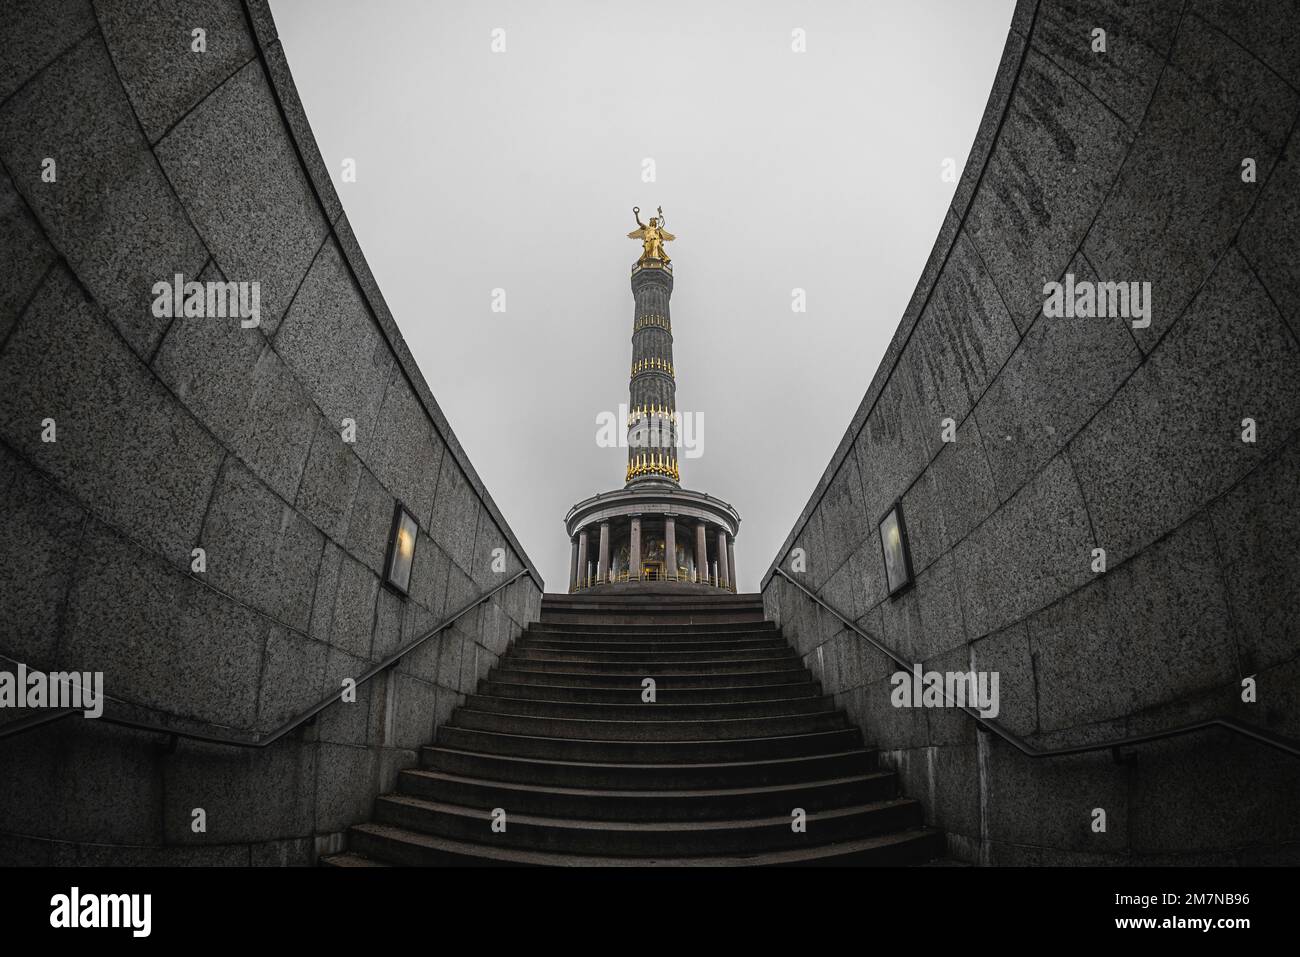 Colonna della vittoria di fronte al cielo nebbioso. Berlino, Germania. Foto Stock